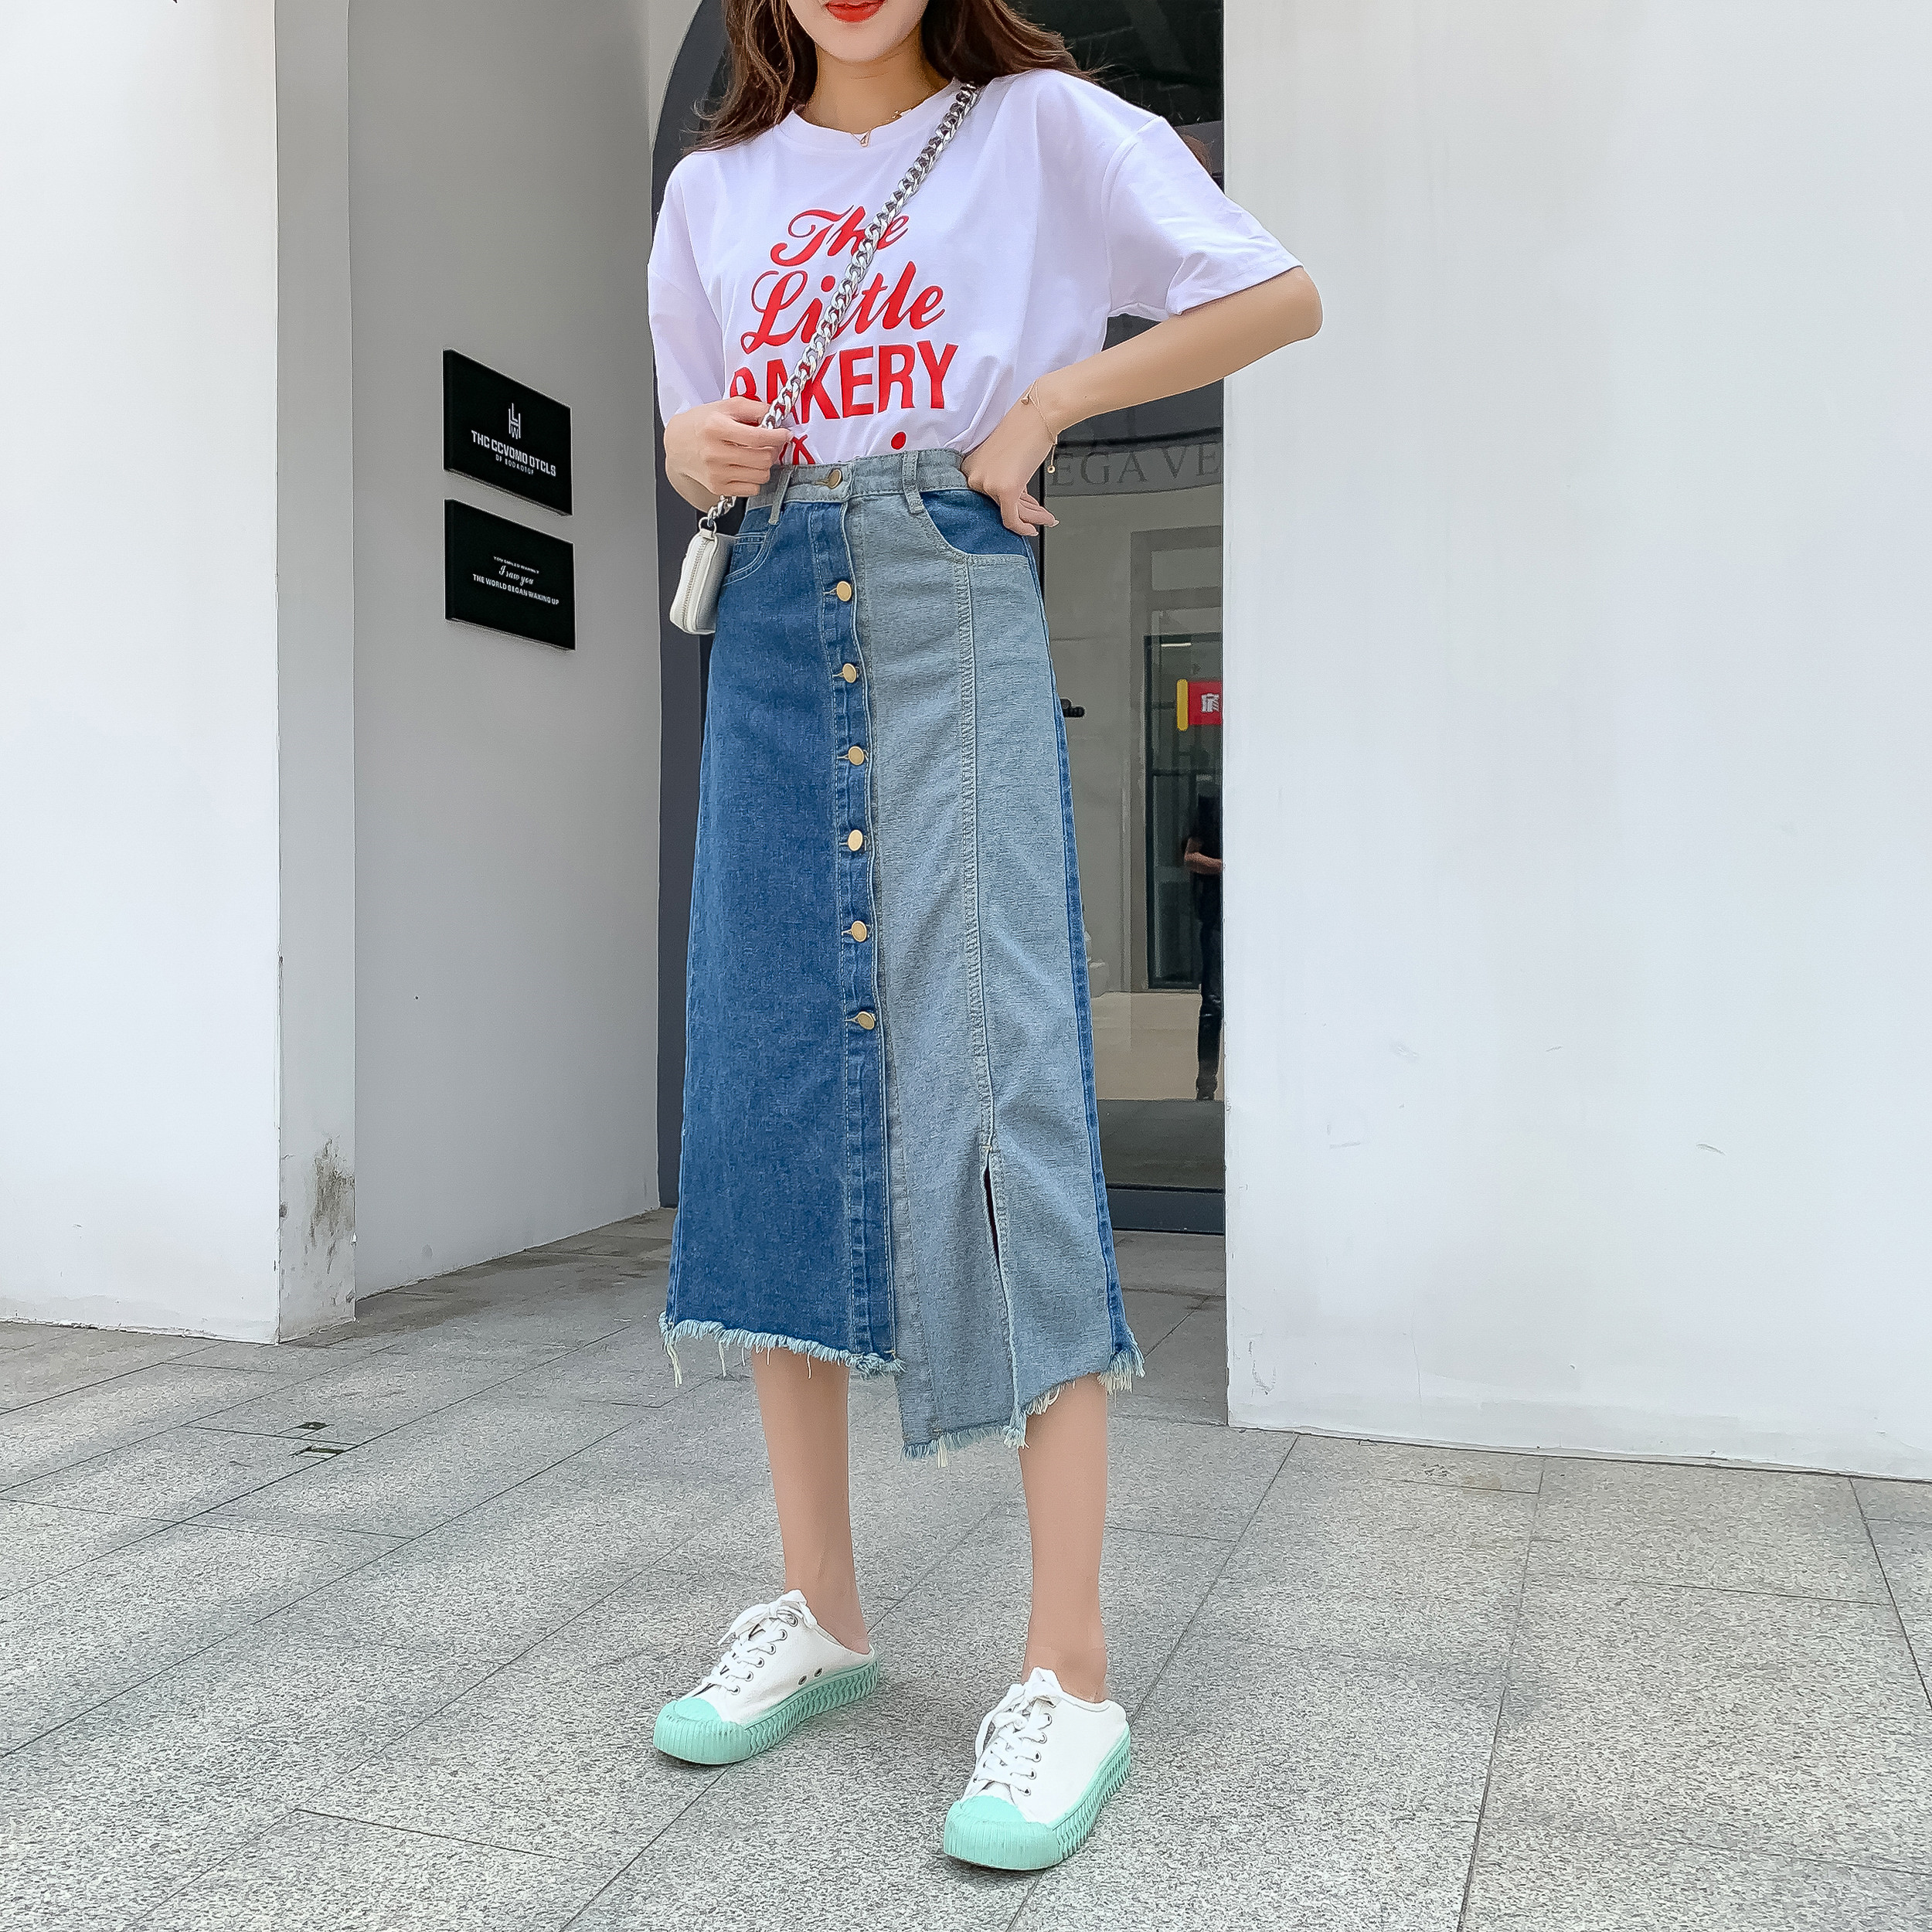 East Gate, South Korea new style denim skirt in summer 2020 irregular splicing skirt split mid length skirt trend